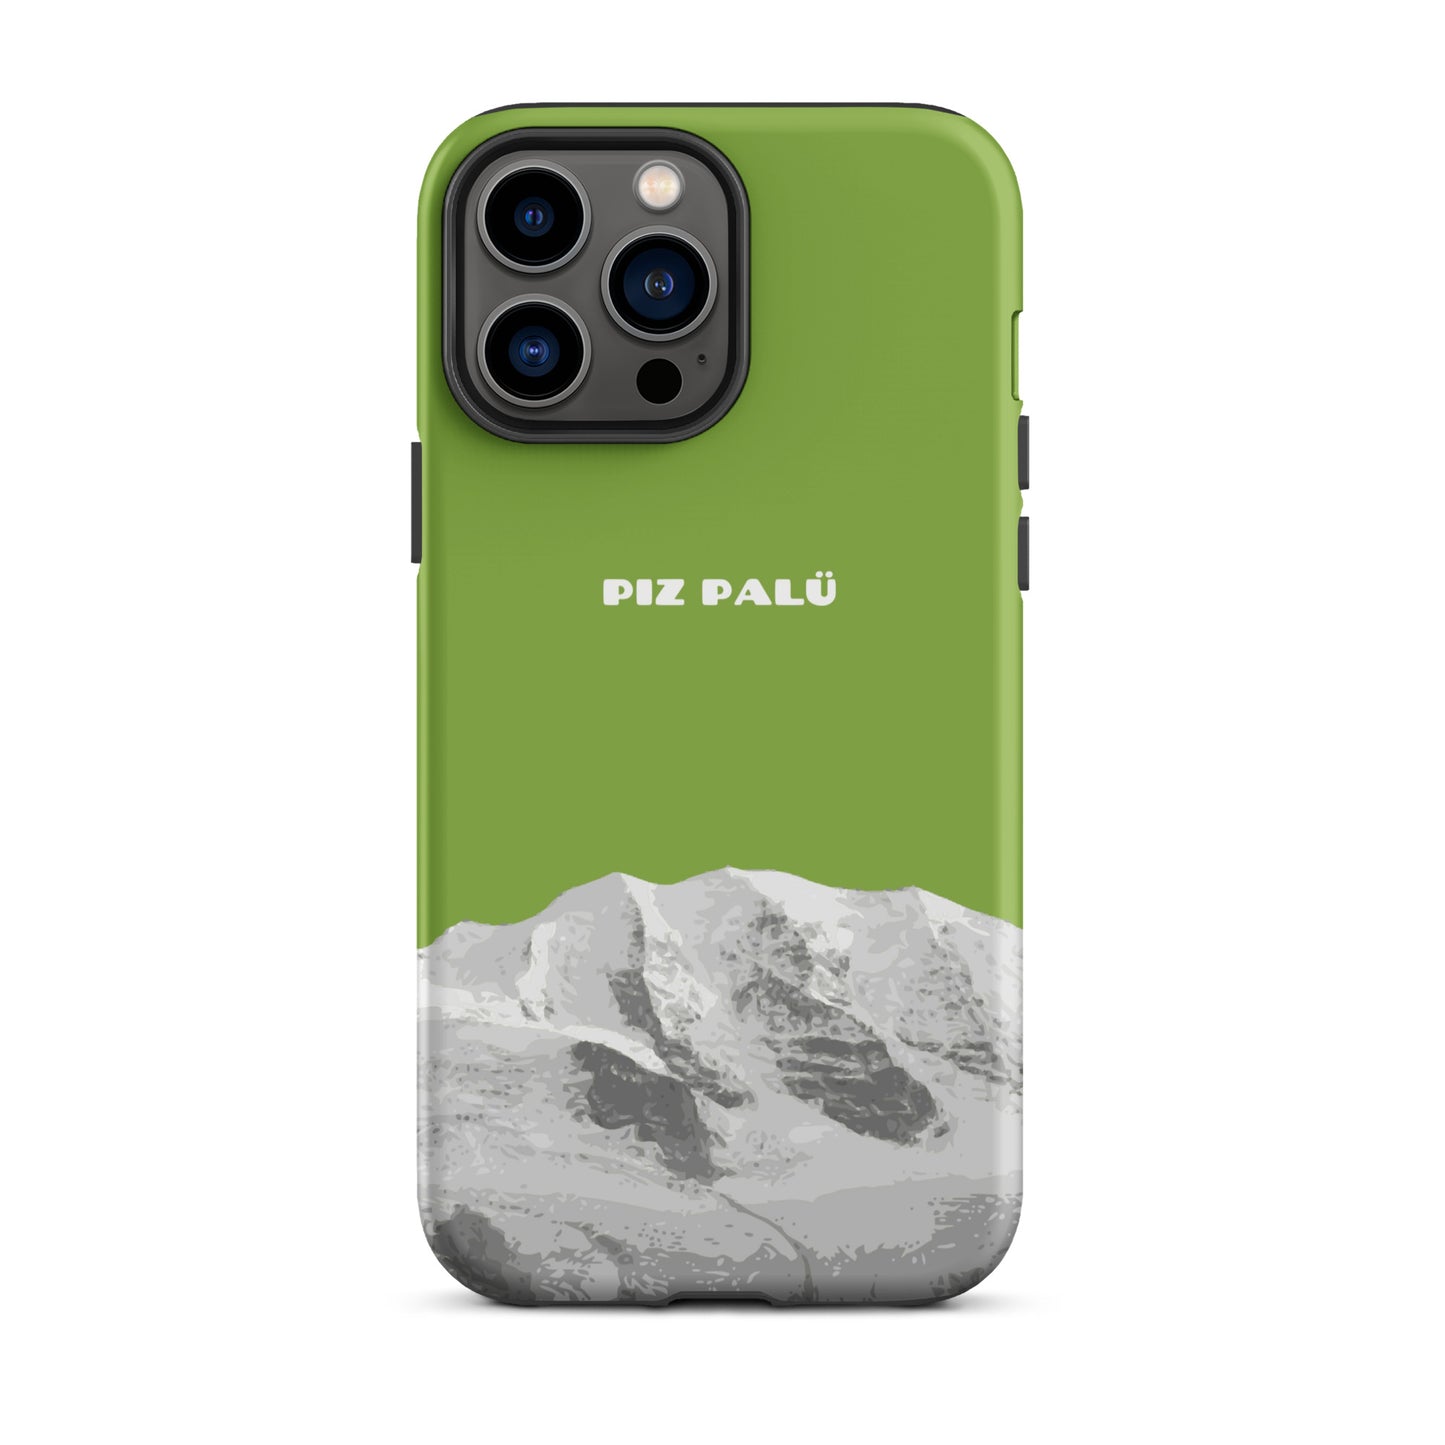 Hülle für das iPhone 13 Pro Max von Apple in der Farbe Gelbgrün, dass den Piz Palü in Graubünden zeigt. 